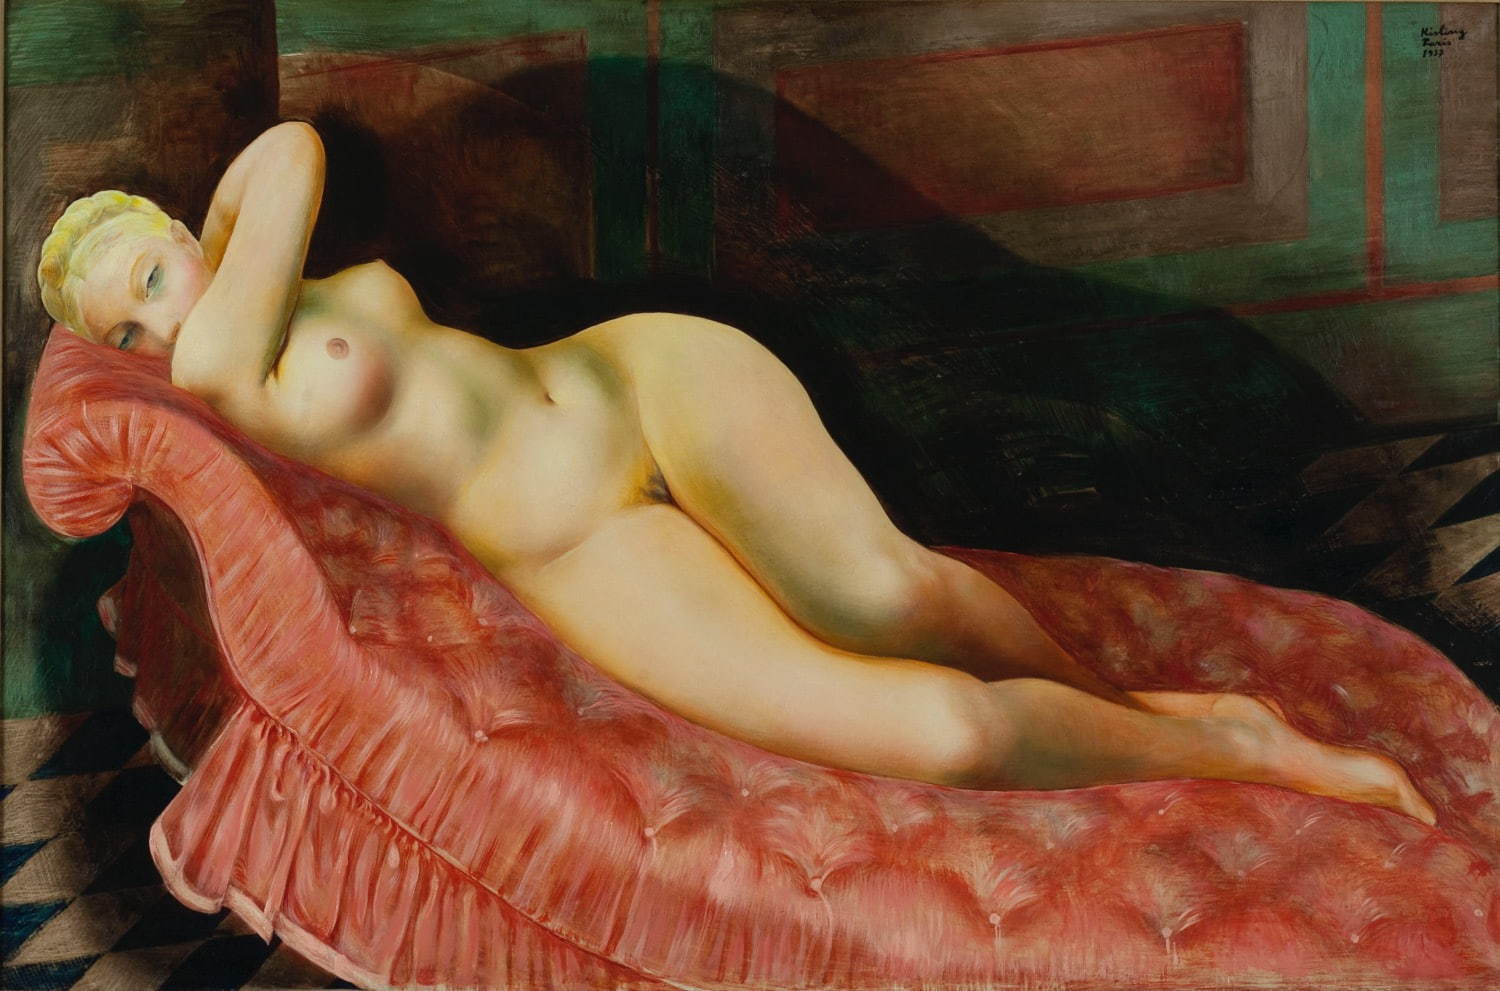 キスリング《赤い長椅子の裸婦》1937年 パリ市立近代美術館 
Photographie © Musée d’Art Moderne / Roger Viollet